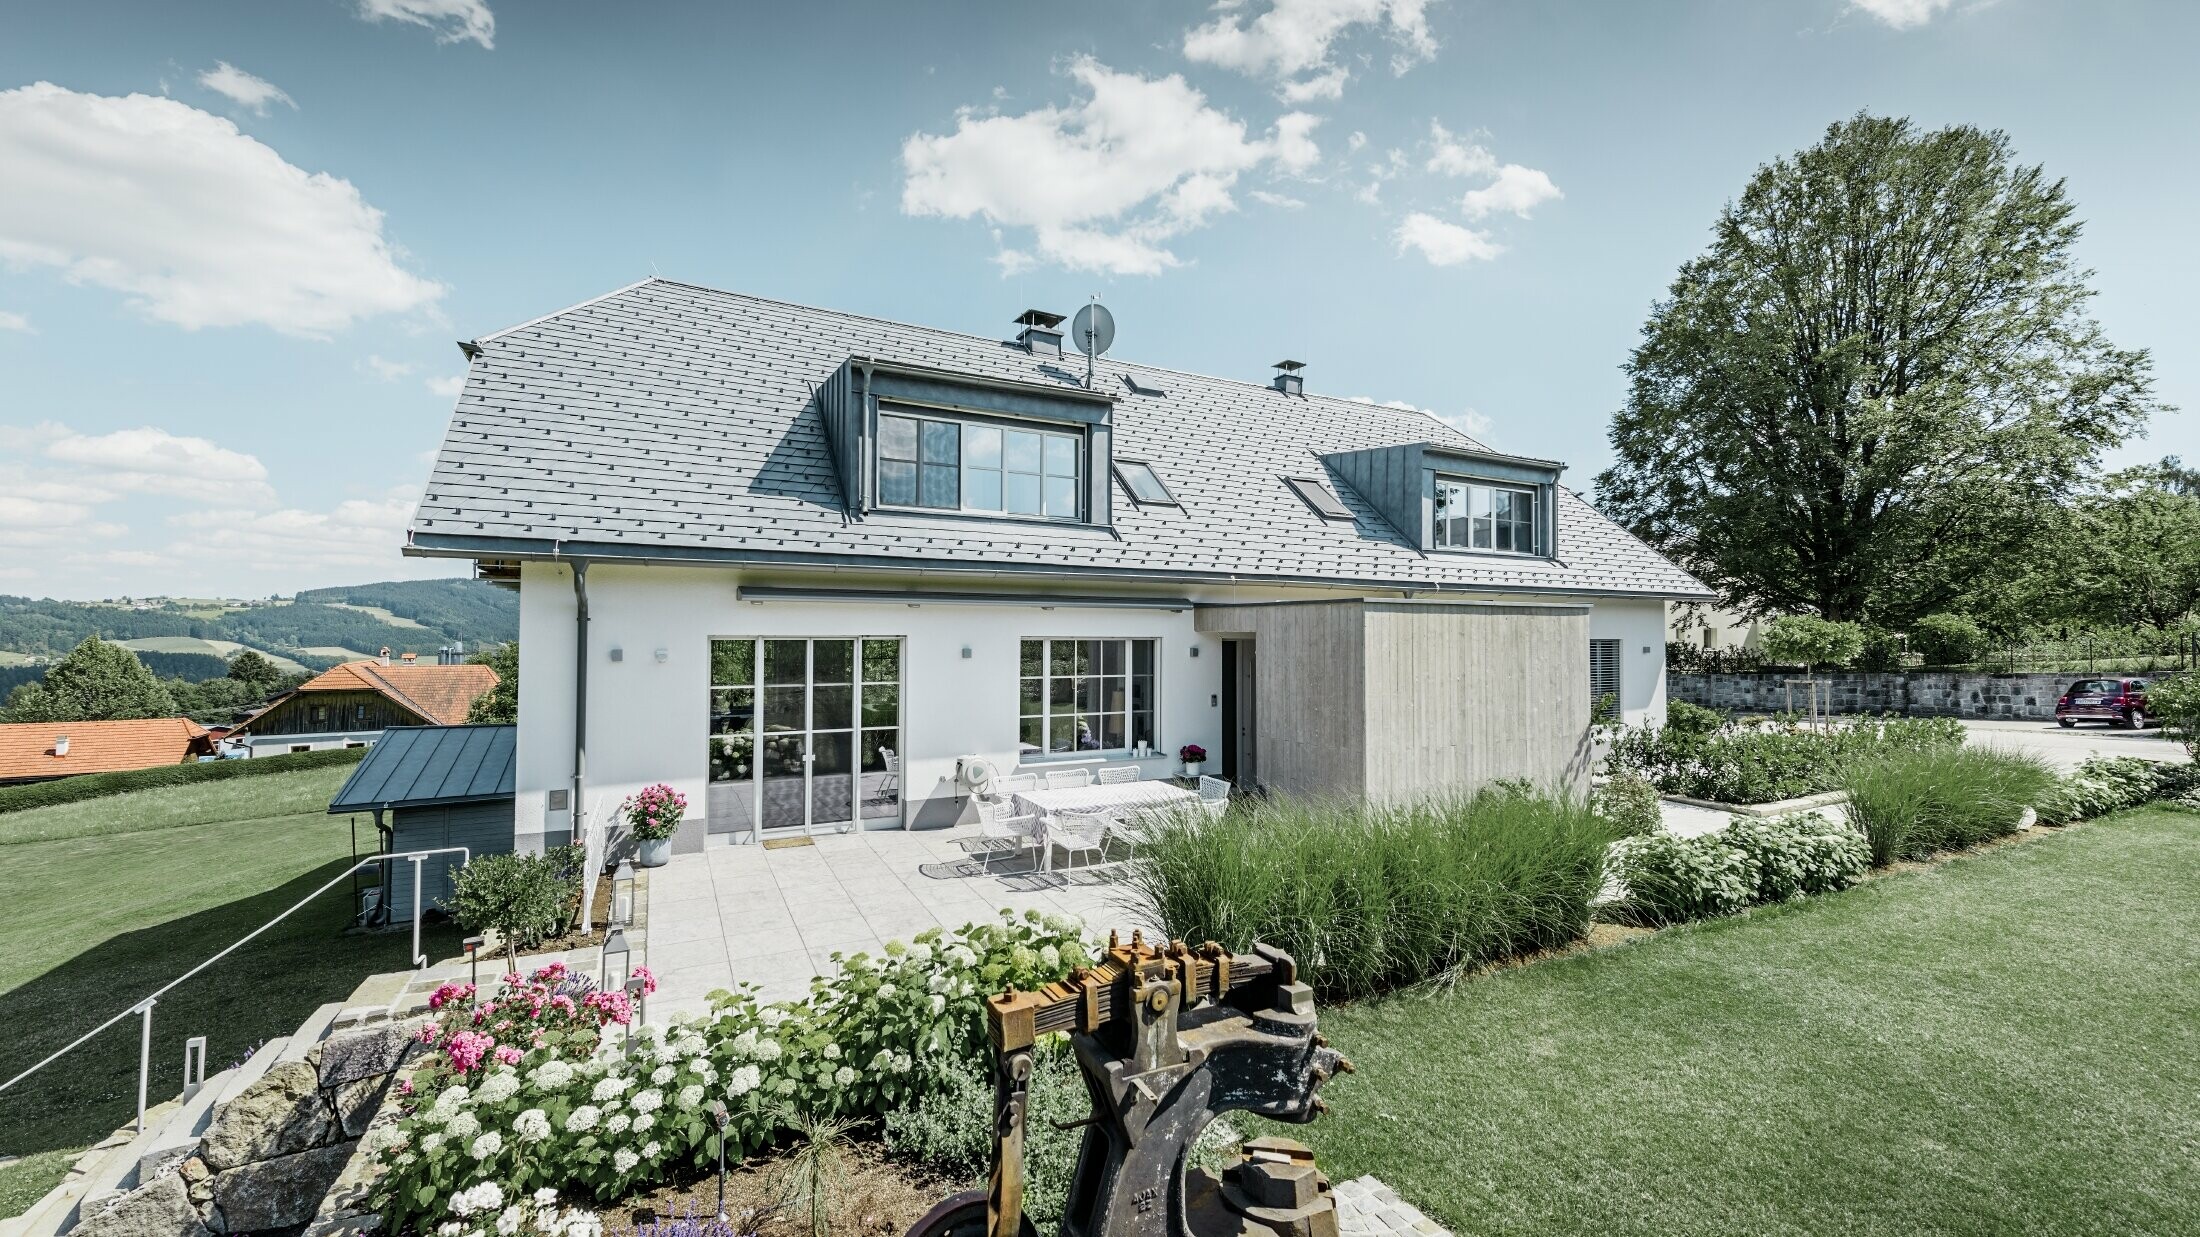 Klassisches Einfamilienhaus mit Krüppelwalmdach; Das Haus mit Dachsanierung mit der PREFA Dachschindel in Steingrau mit schön angelegtem Garten und großzügiger Terrasse.